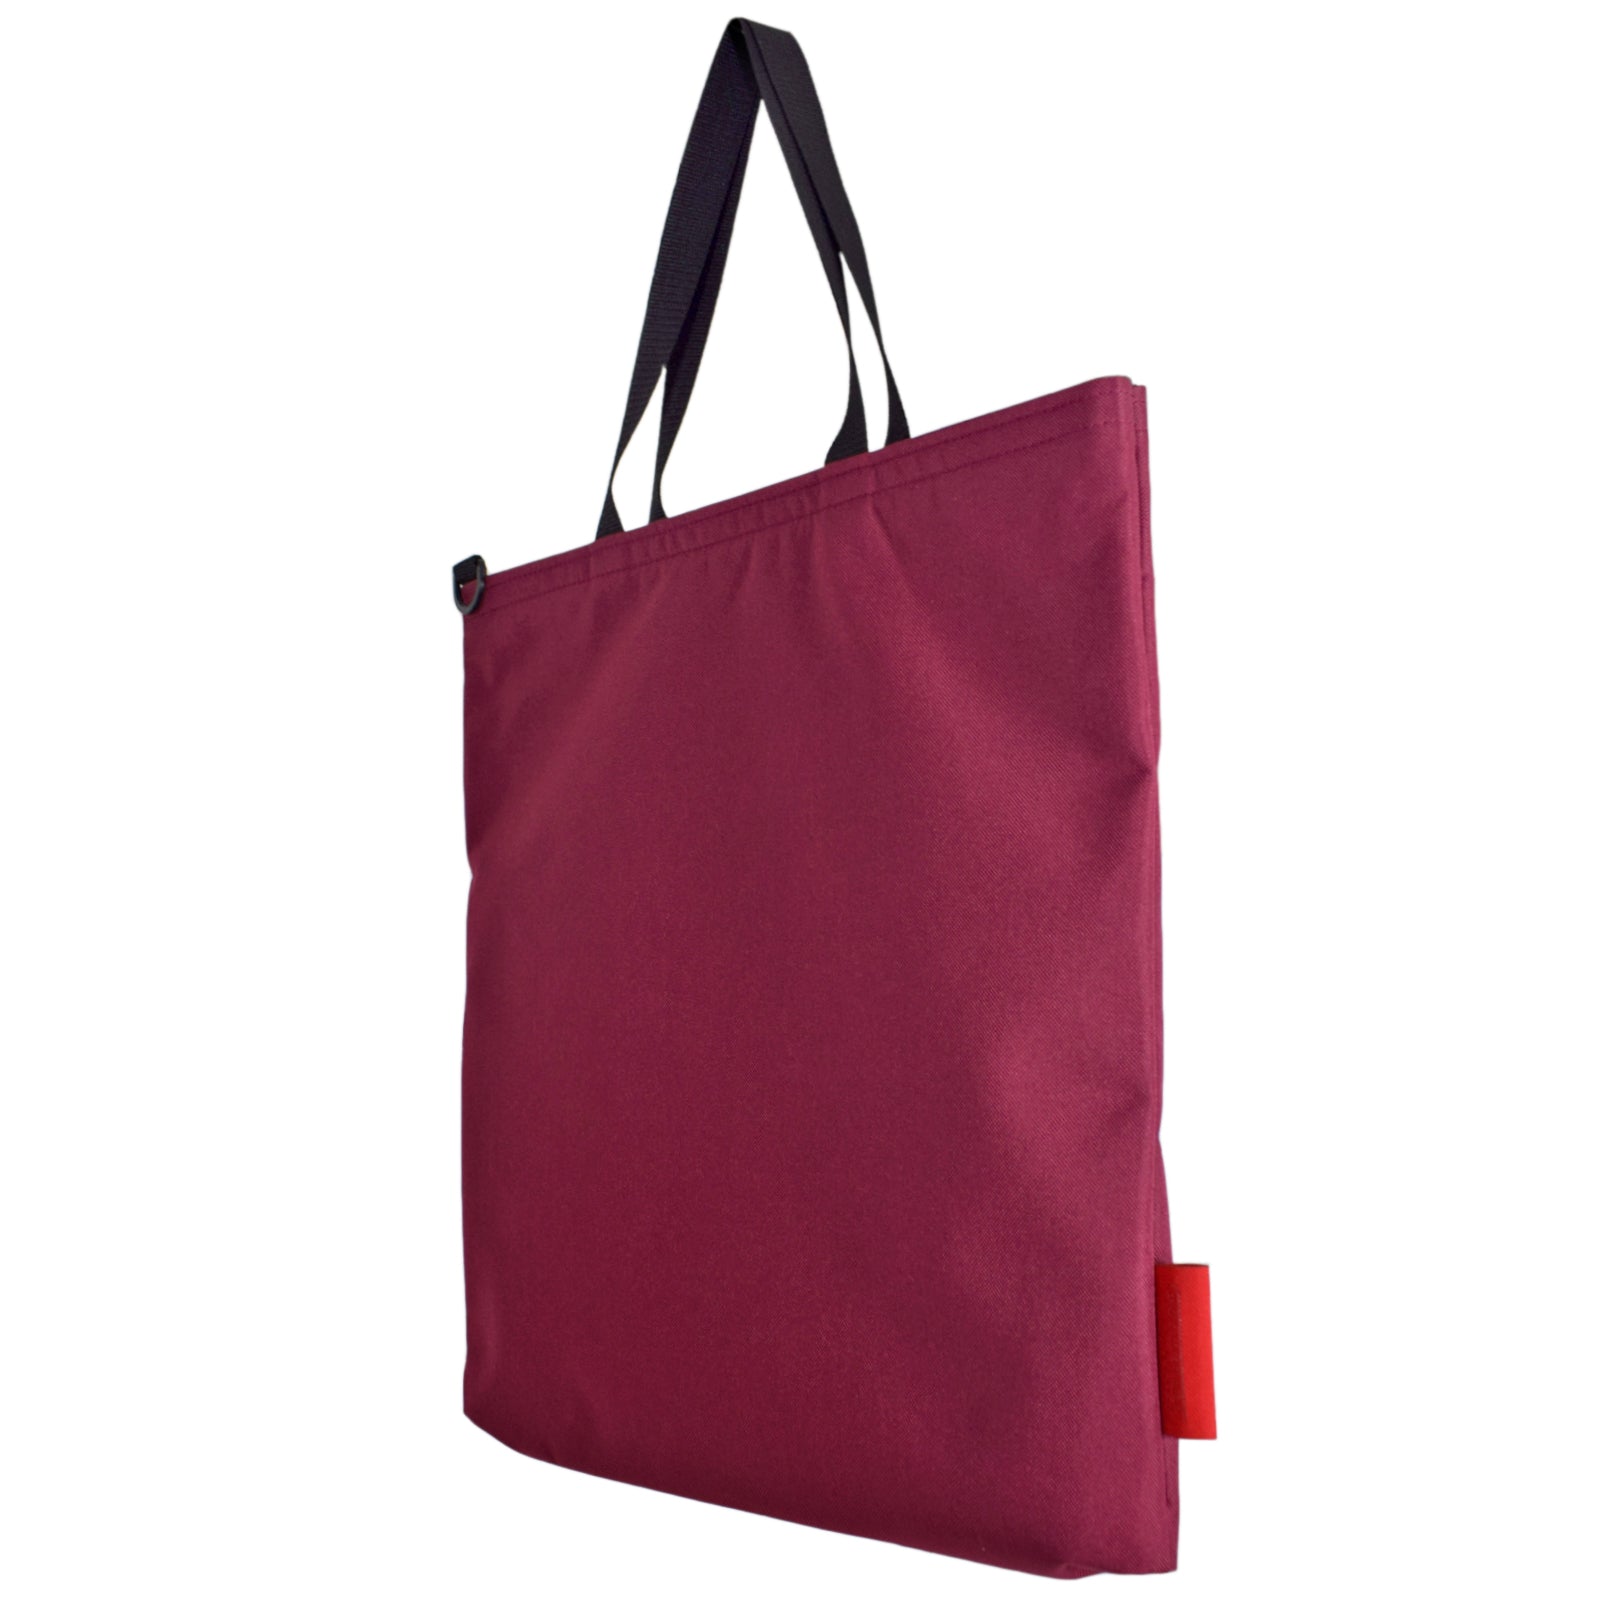 Burgundy tote bag with detachable shoulder strap 